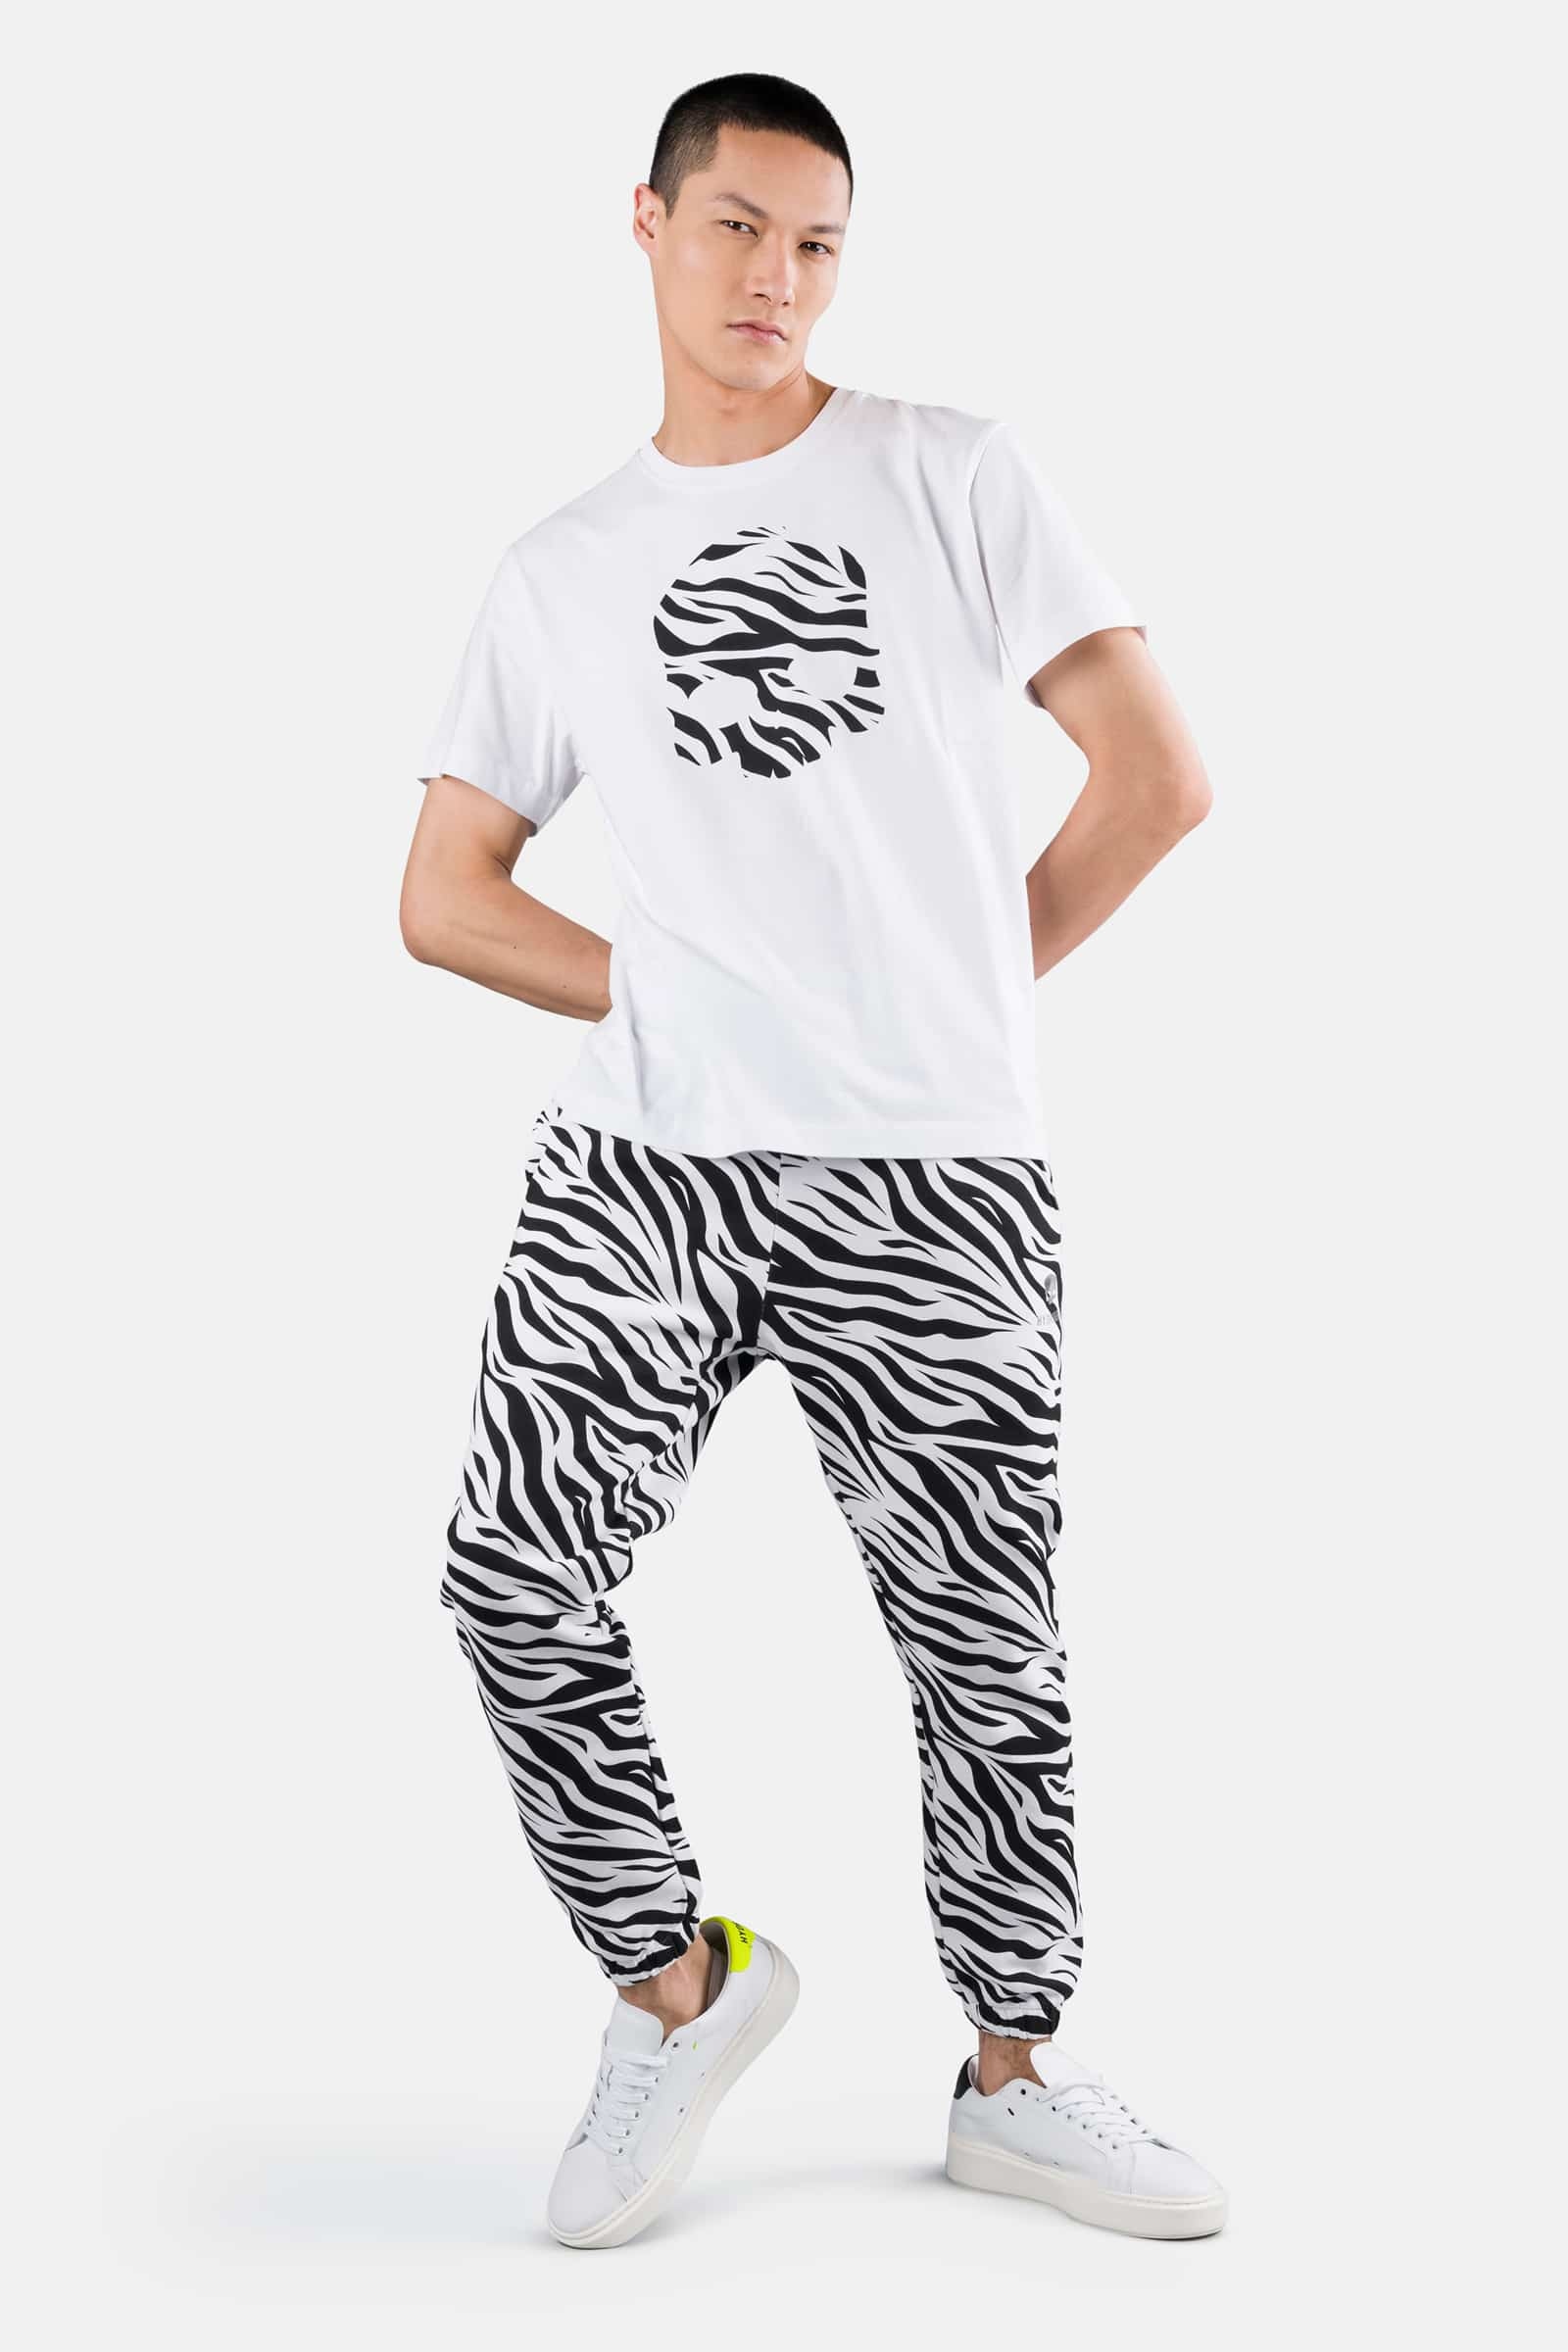 SKULL TEE - WHITE,ZEBRA - Hydrogen - Luxury Sportwear